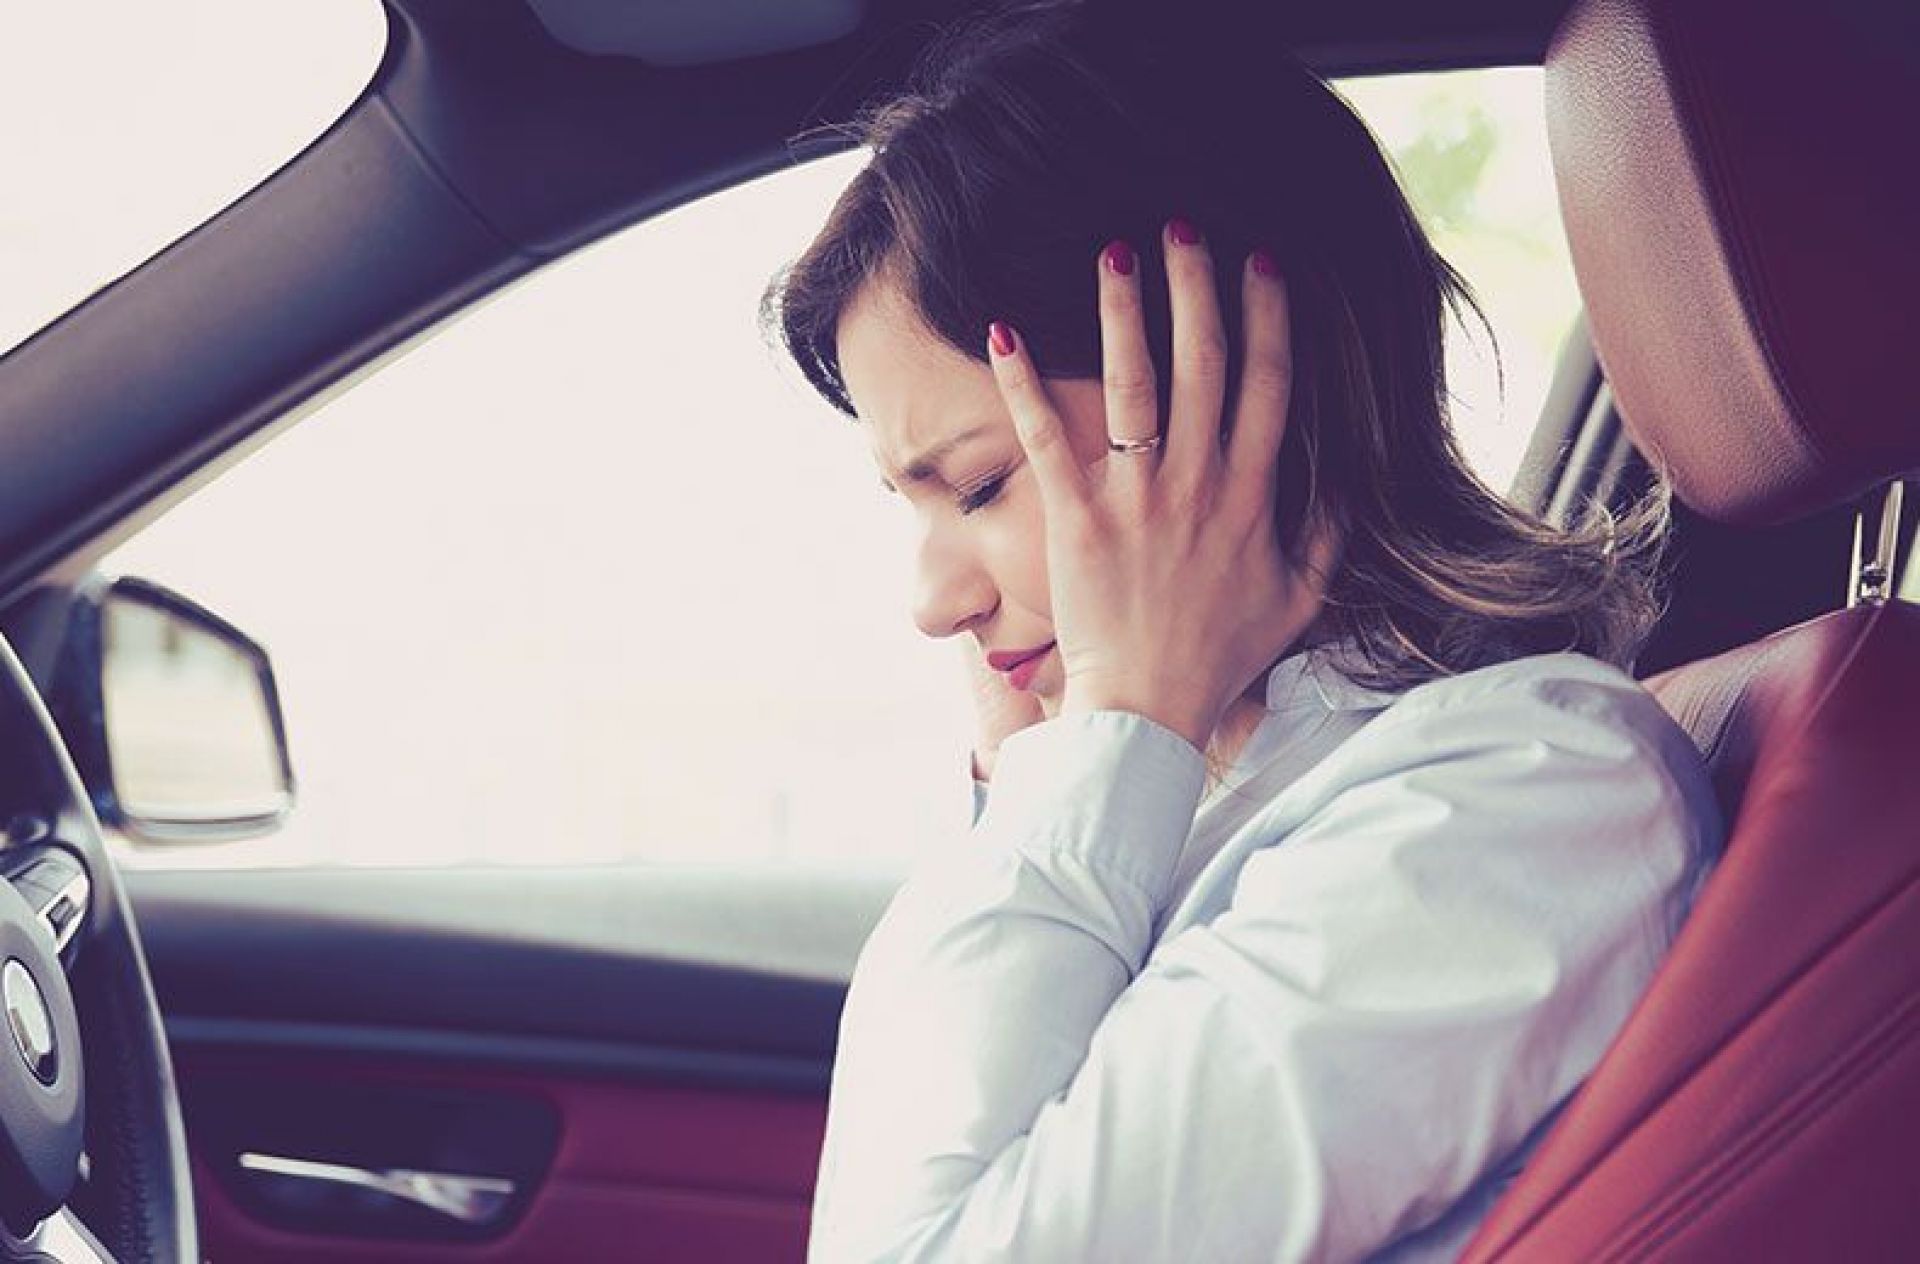 Έρευνα: Γνωρίζετε ότι ο θόρυβος στο εσωτερικό ενός αυτοκινήτου συνδέεται με την κατάθλιψη;